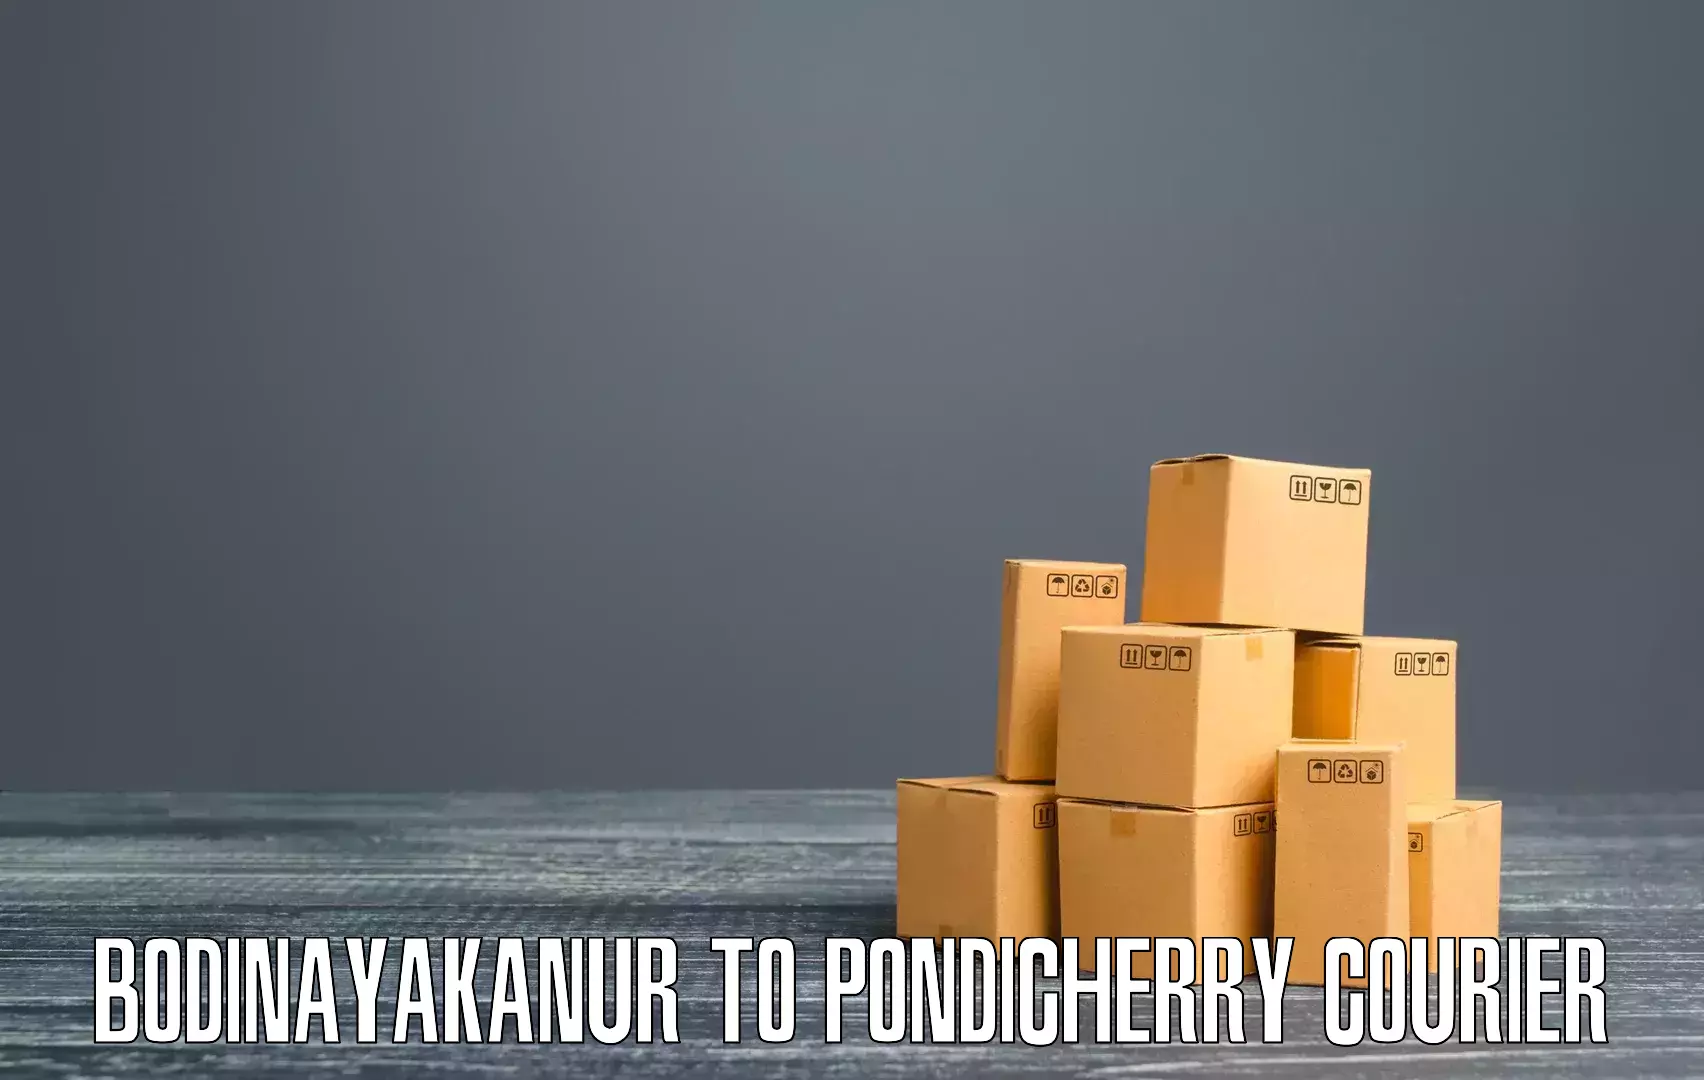 Efficient courier operations Bodinayakanur to Pondicherry